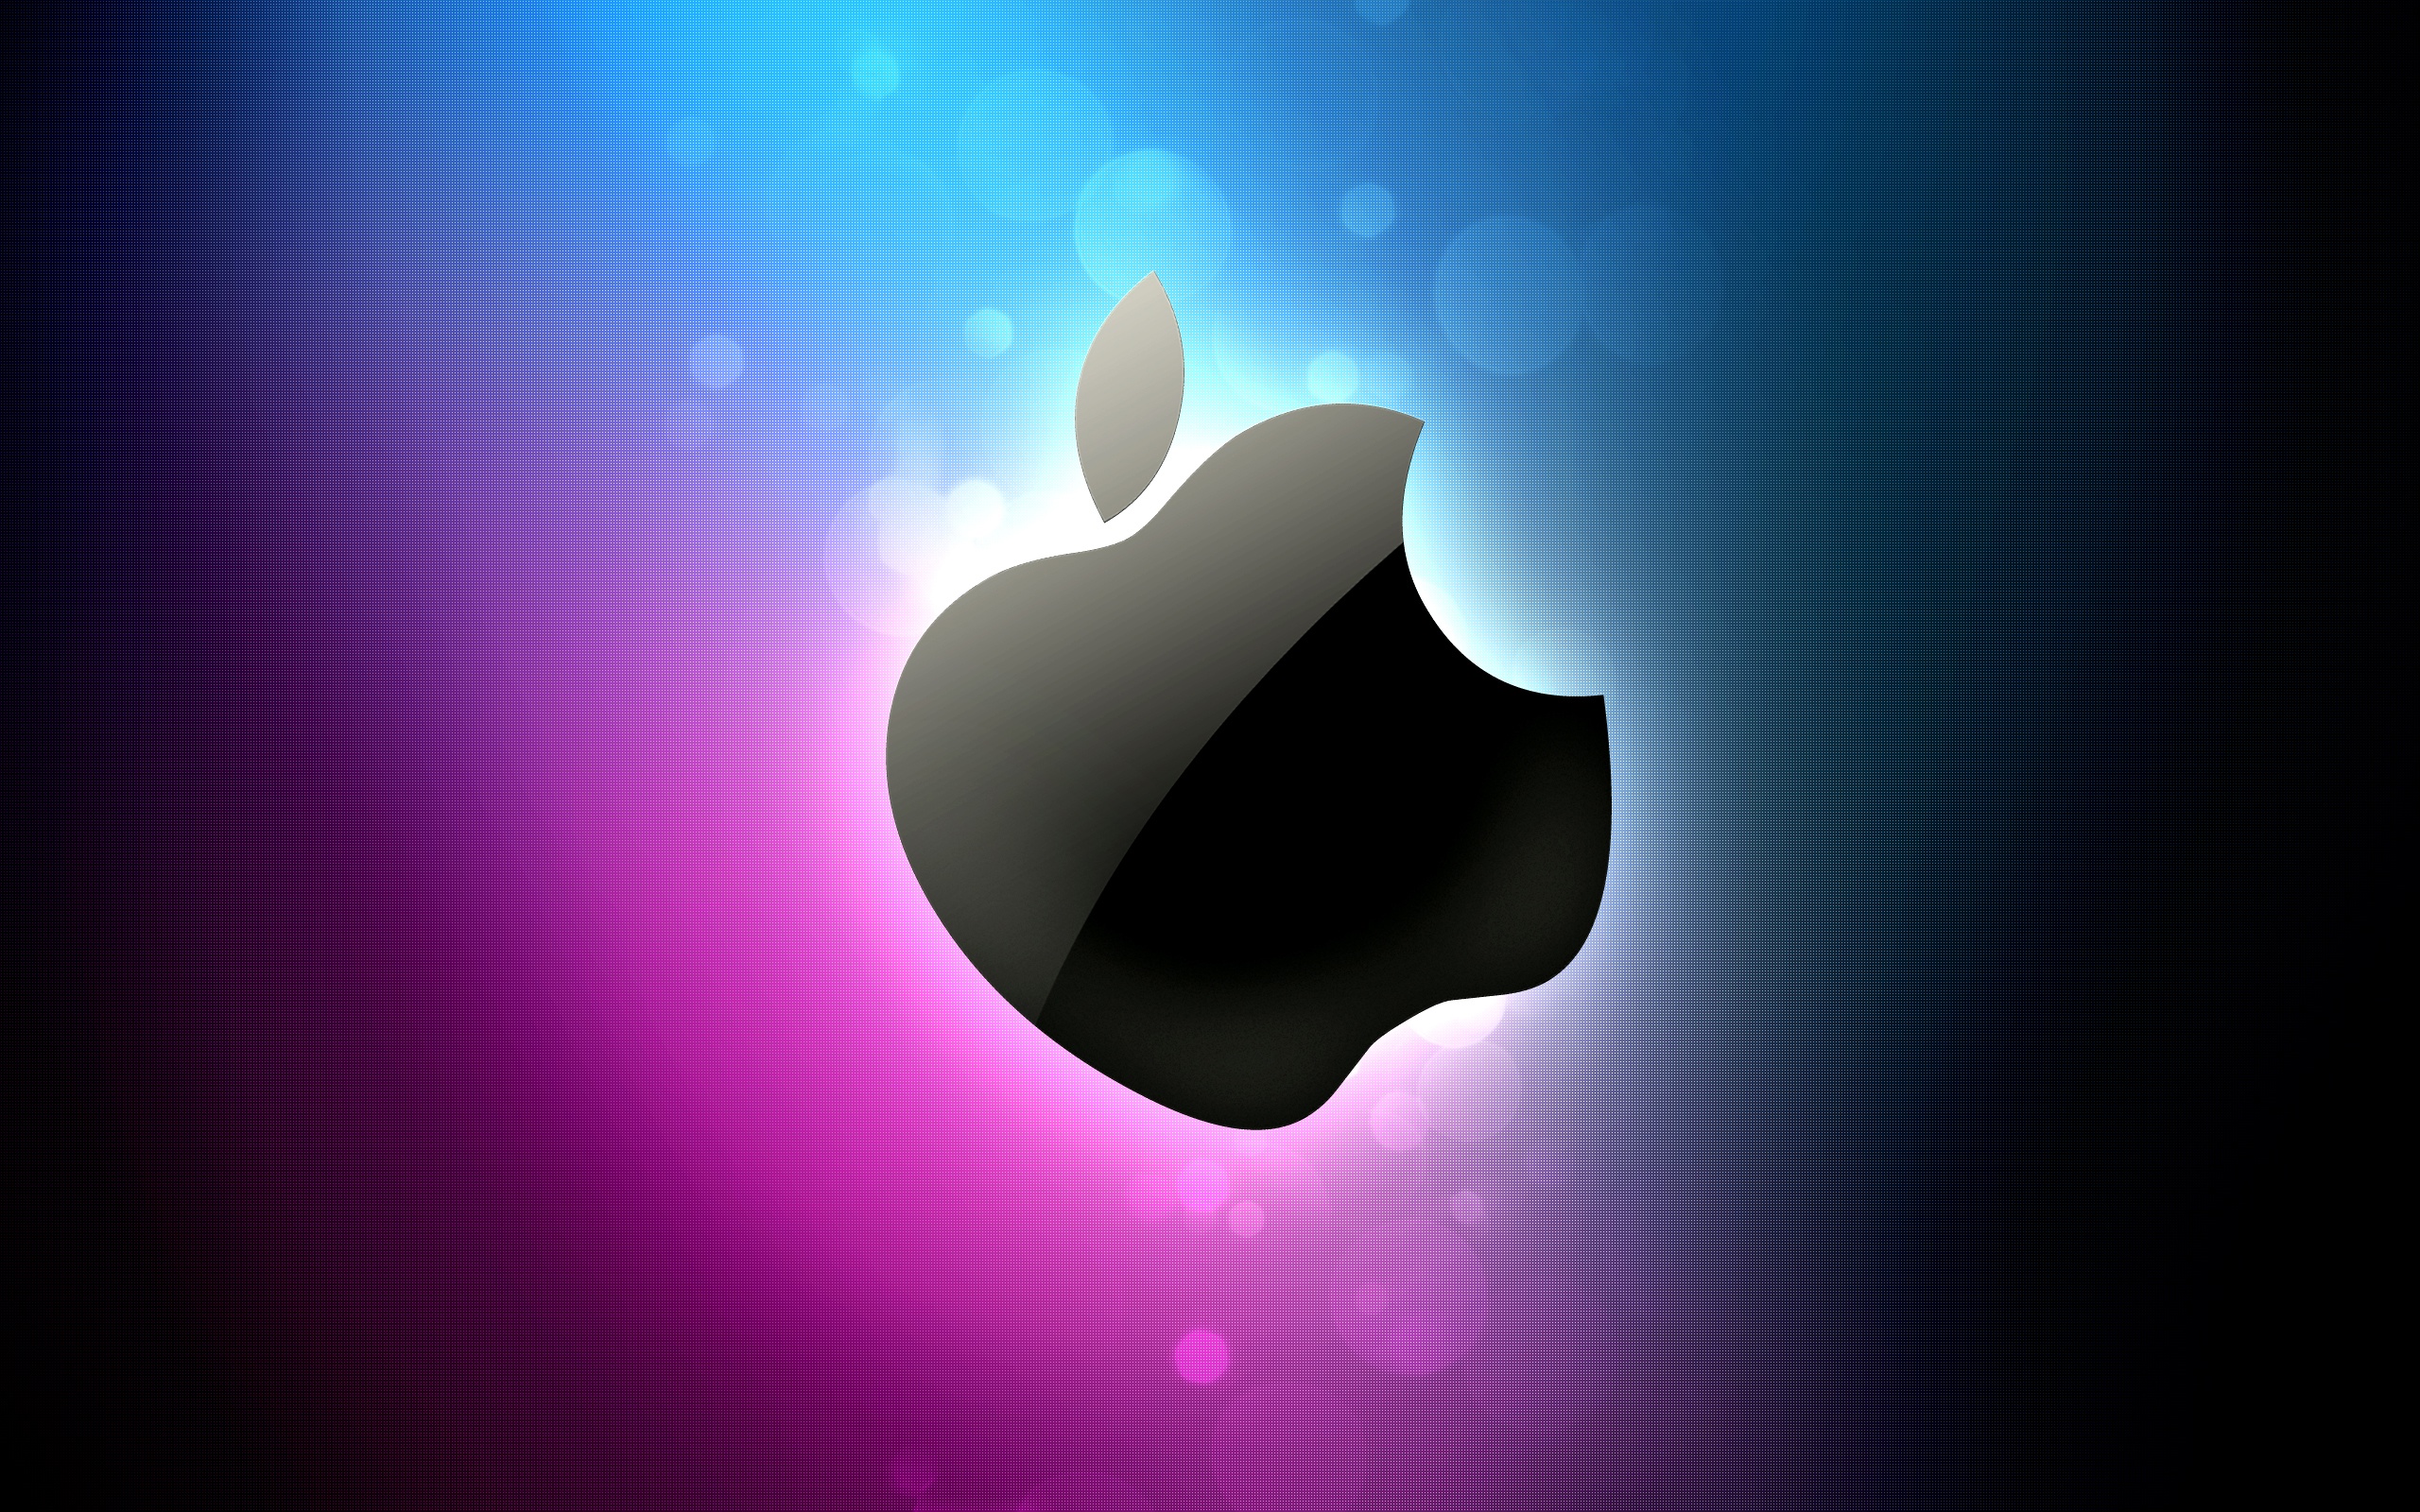 синий, розовый цвет, Эппл (Apple), макинтош, логотипы - обои на рабочий стол